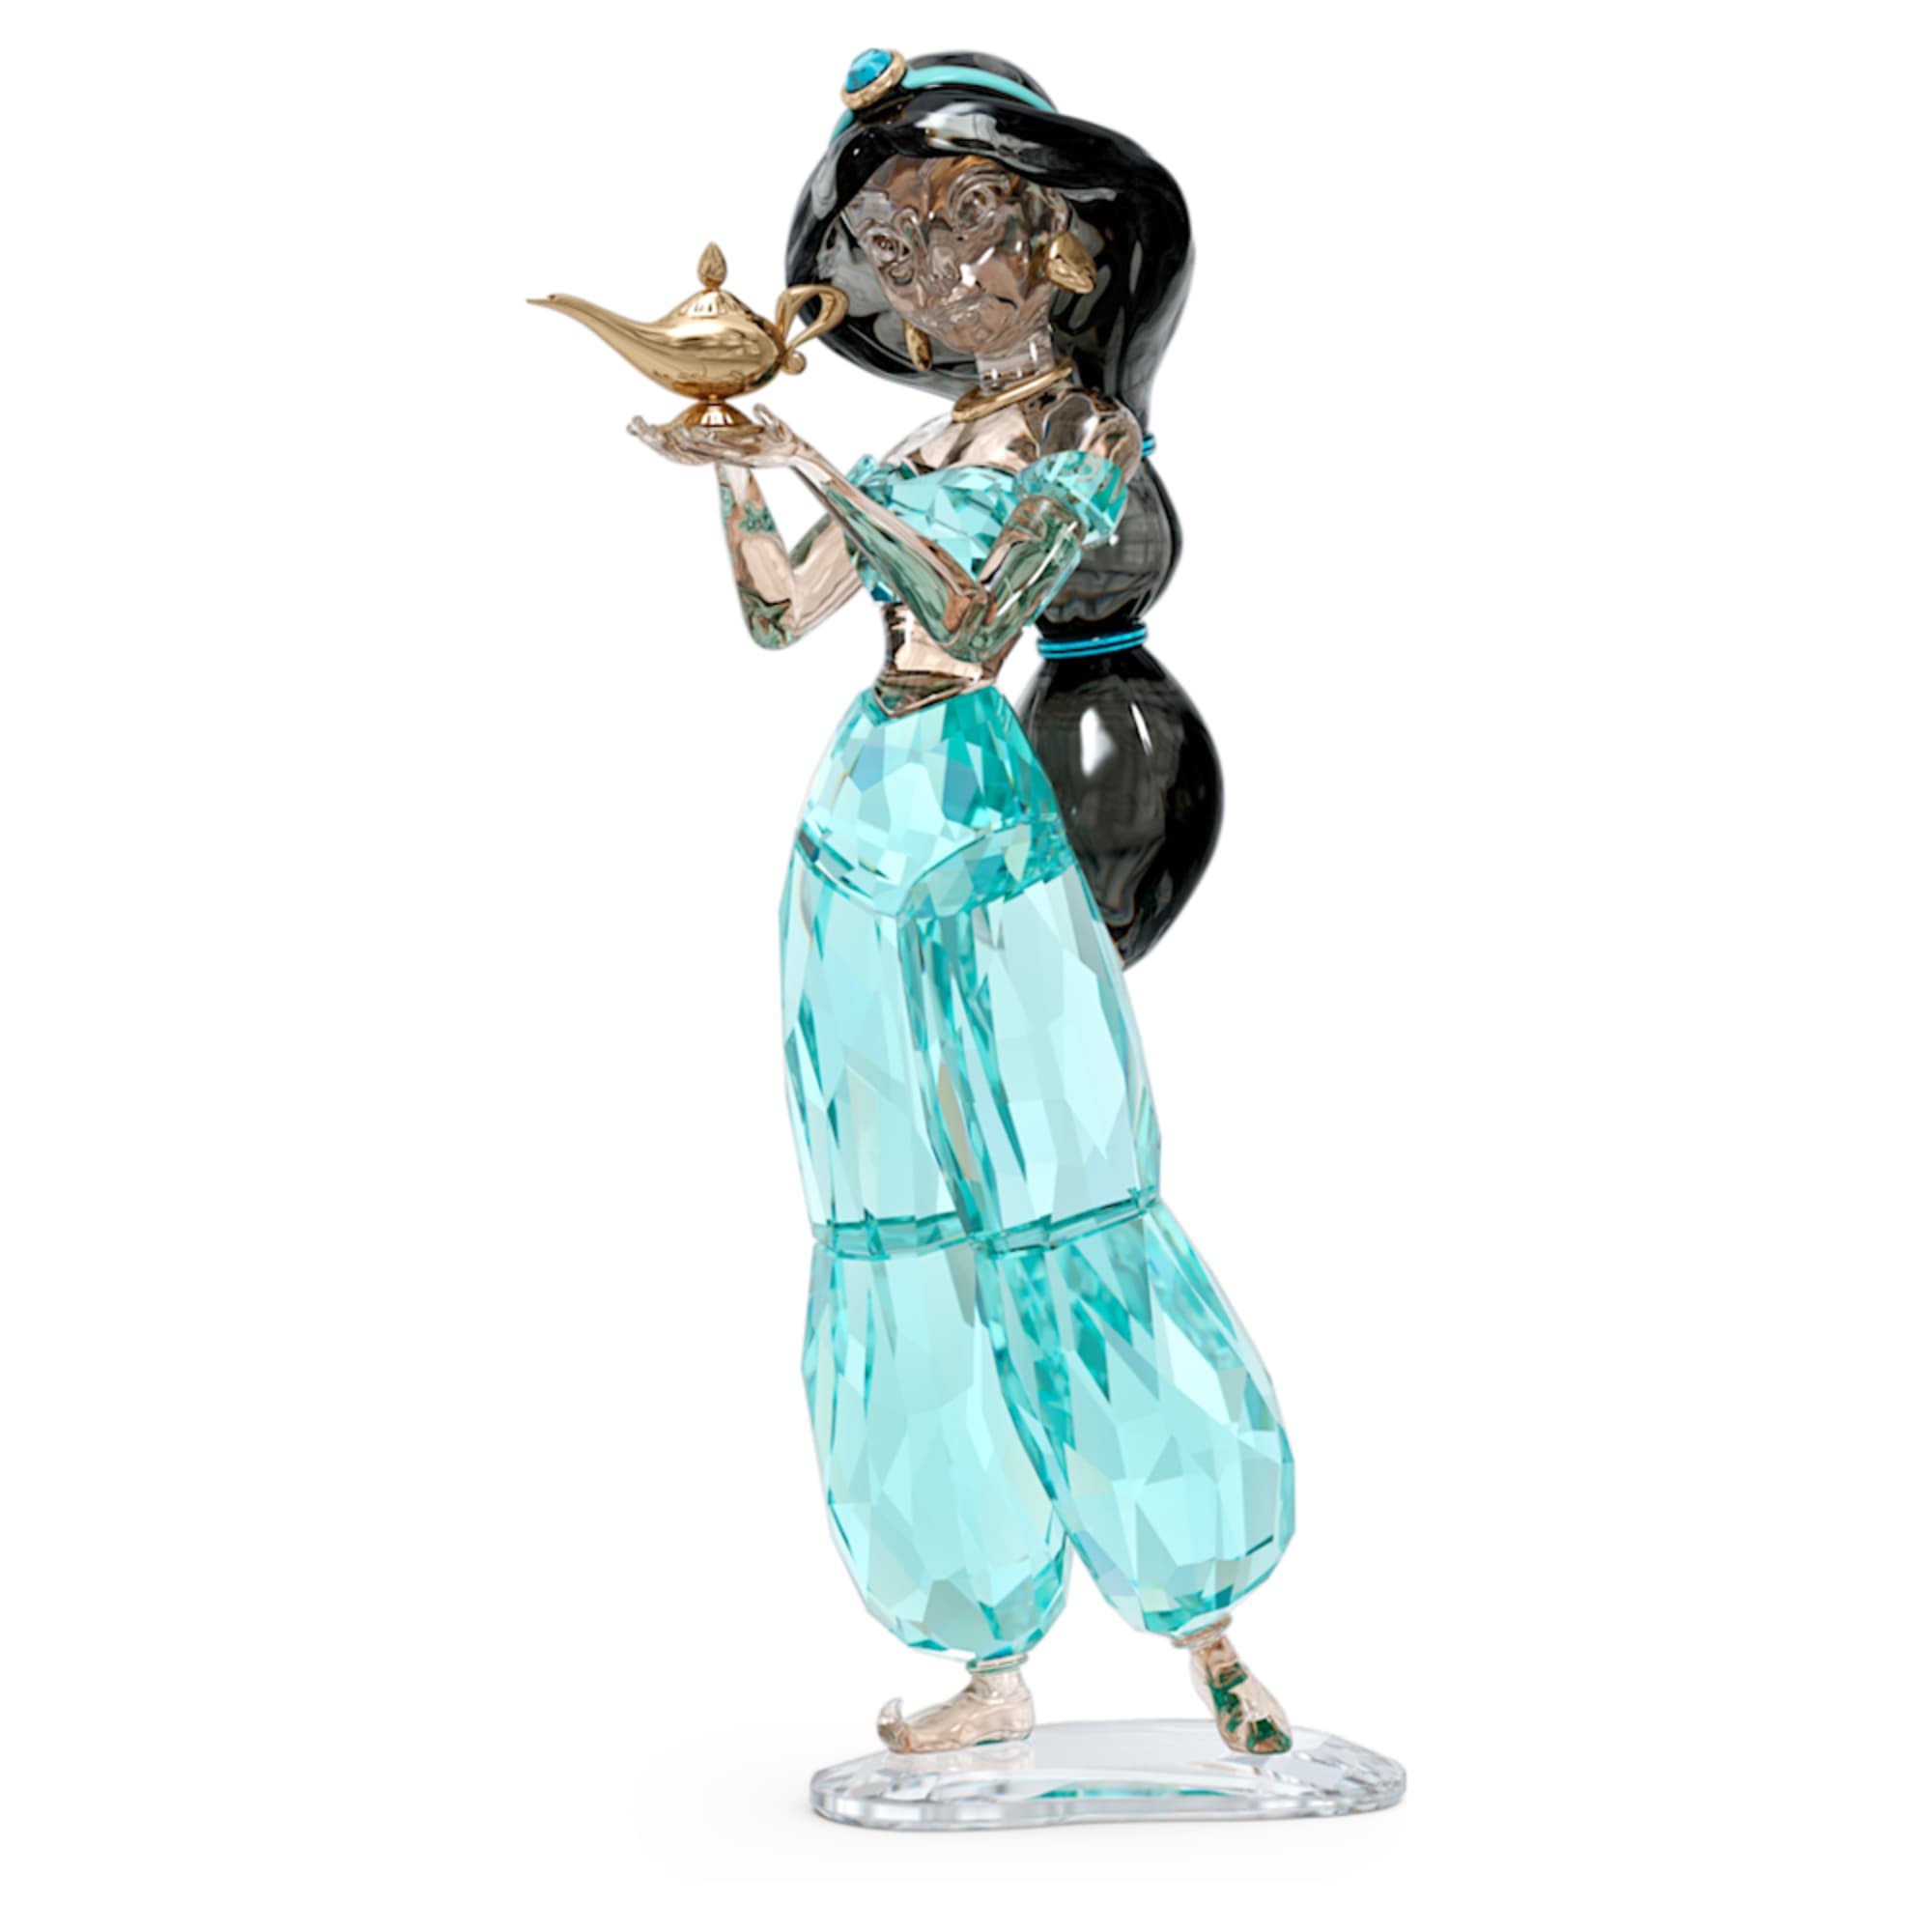 Swarovski: Disney's Aladdin - Princess Jasmine Annual Edition 2022